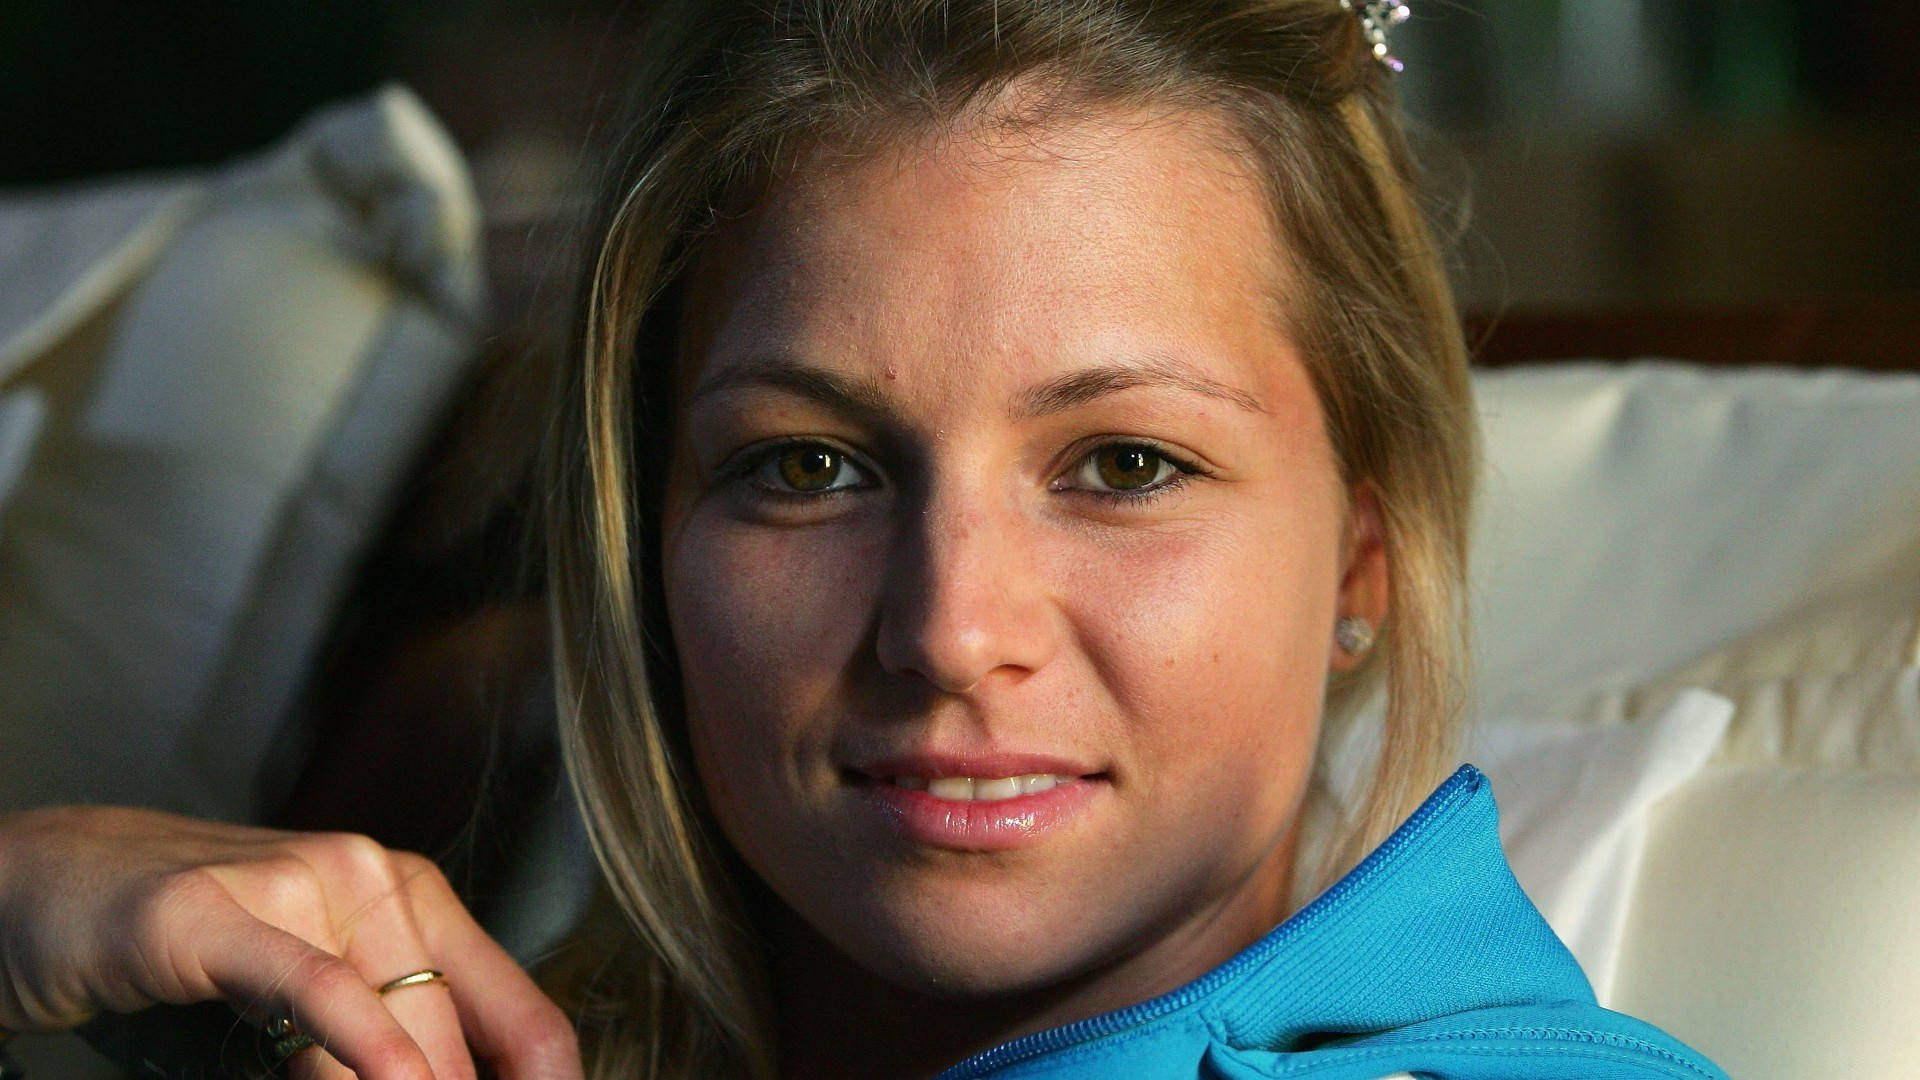 Maria Kirilenko - Tennis Star in close-up Wallpaper